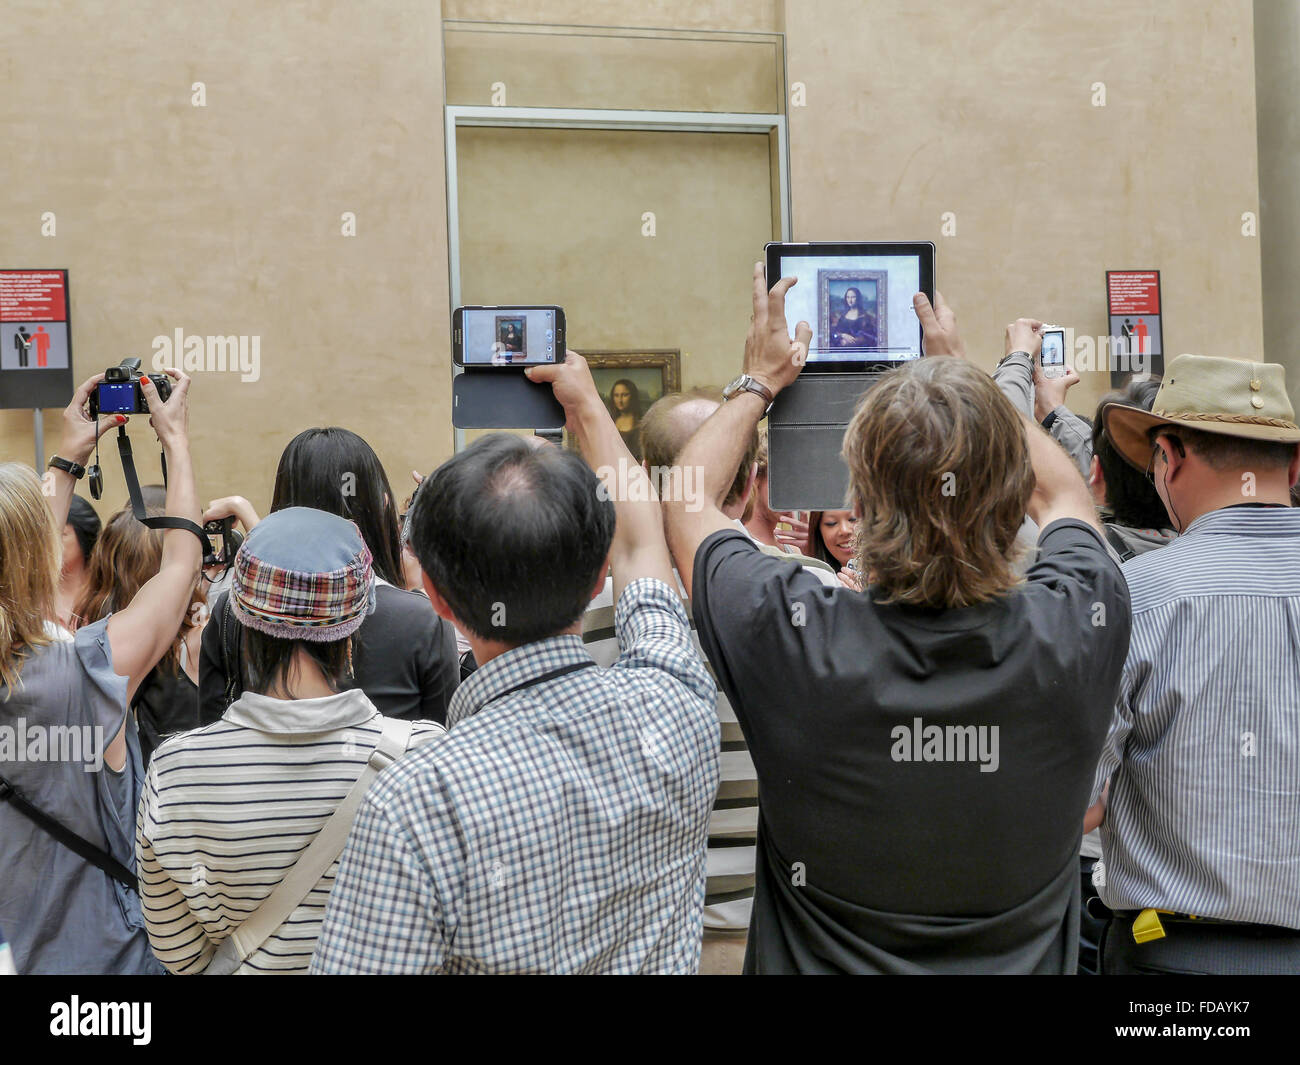 PARIS, FRANCE - AUGUST 28 2013: - A crowd of visitors taking pictures of Leonardo Da Vinci's famous portrait of 'Mona Lisa' Stock Photo